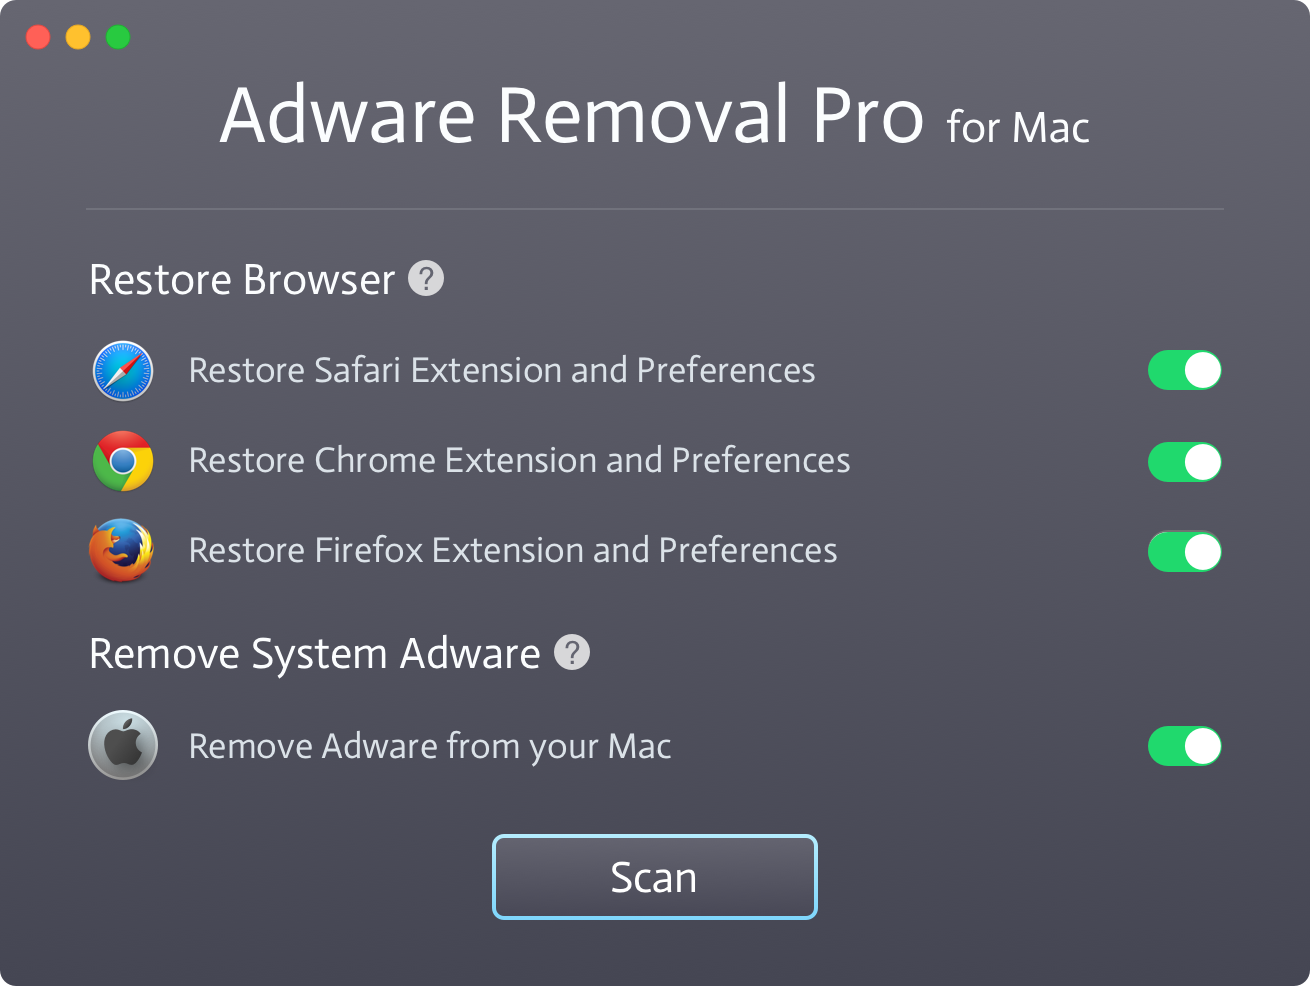 Adware Removal Pro 1.0 : Main UI